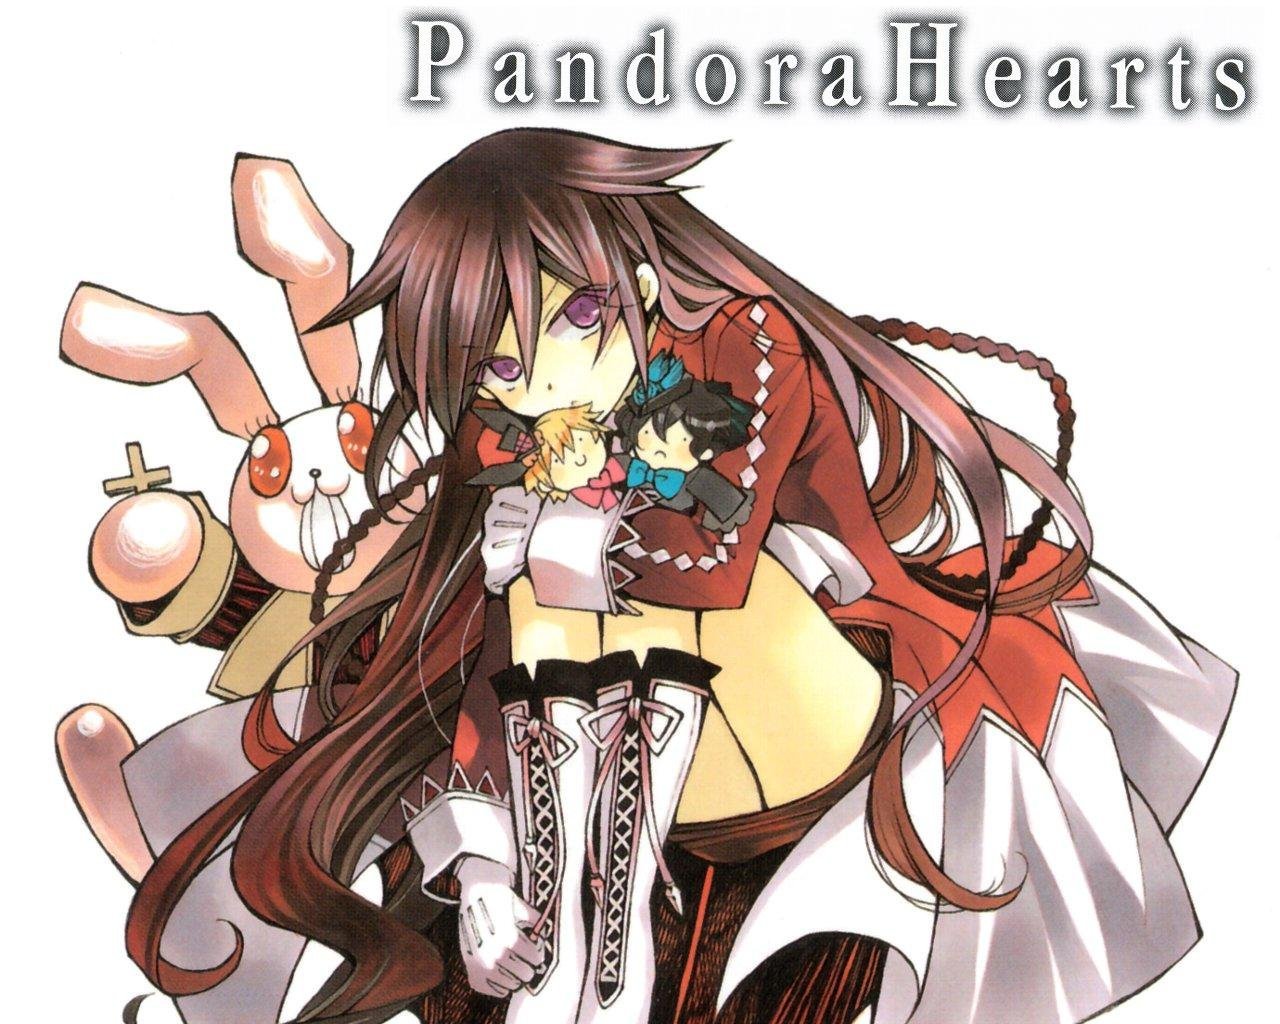 潘多拉之心(pandora hearts) - 动漫图片 | 图片下载 | 动漫壁纸